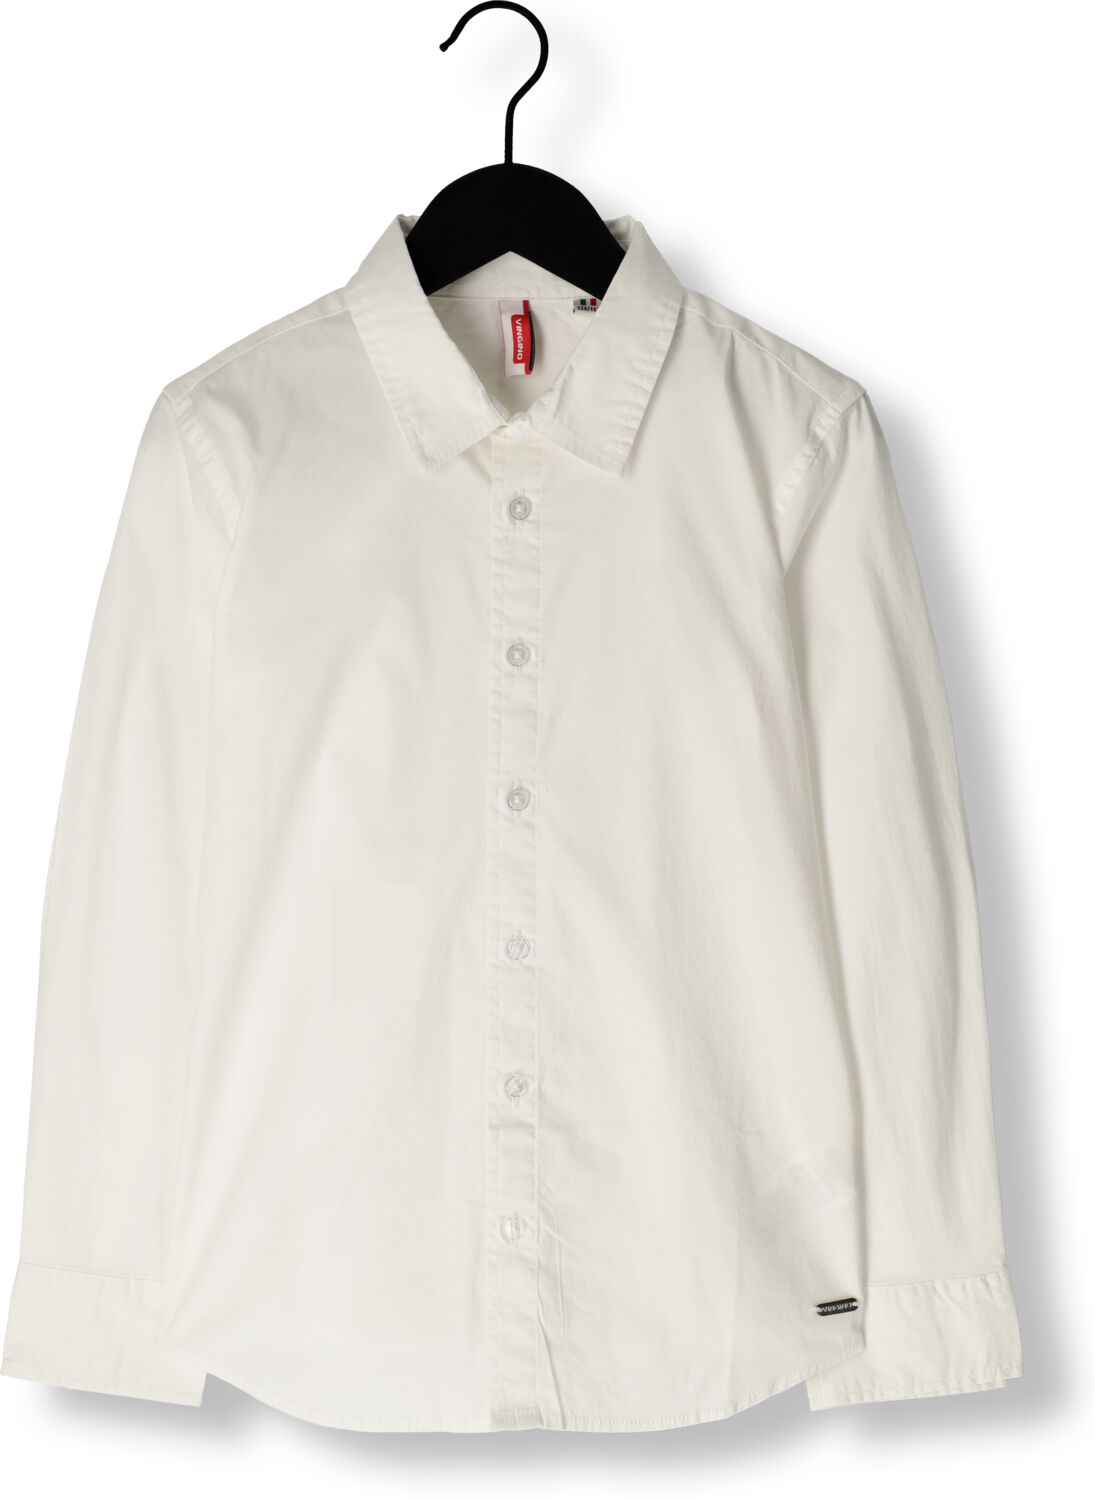 VINGINO overhemd Lasic wit T-shirt Jongens Katoen Klassieke kraag Effen 128